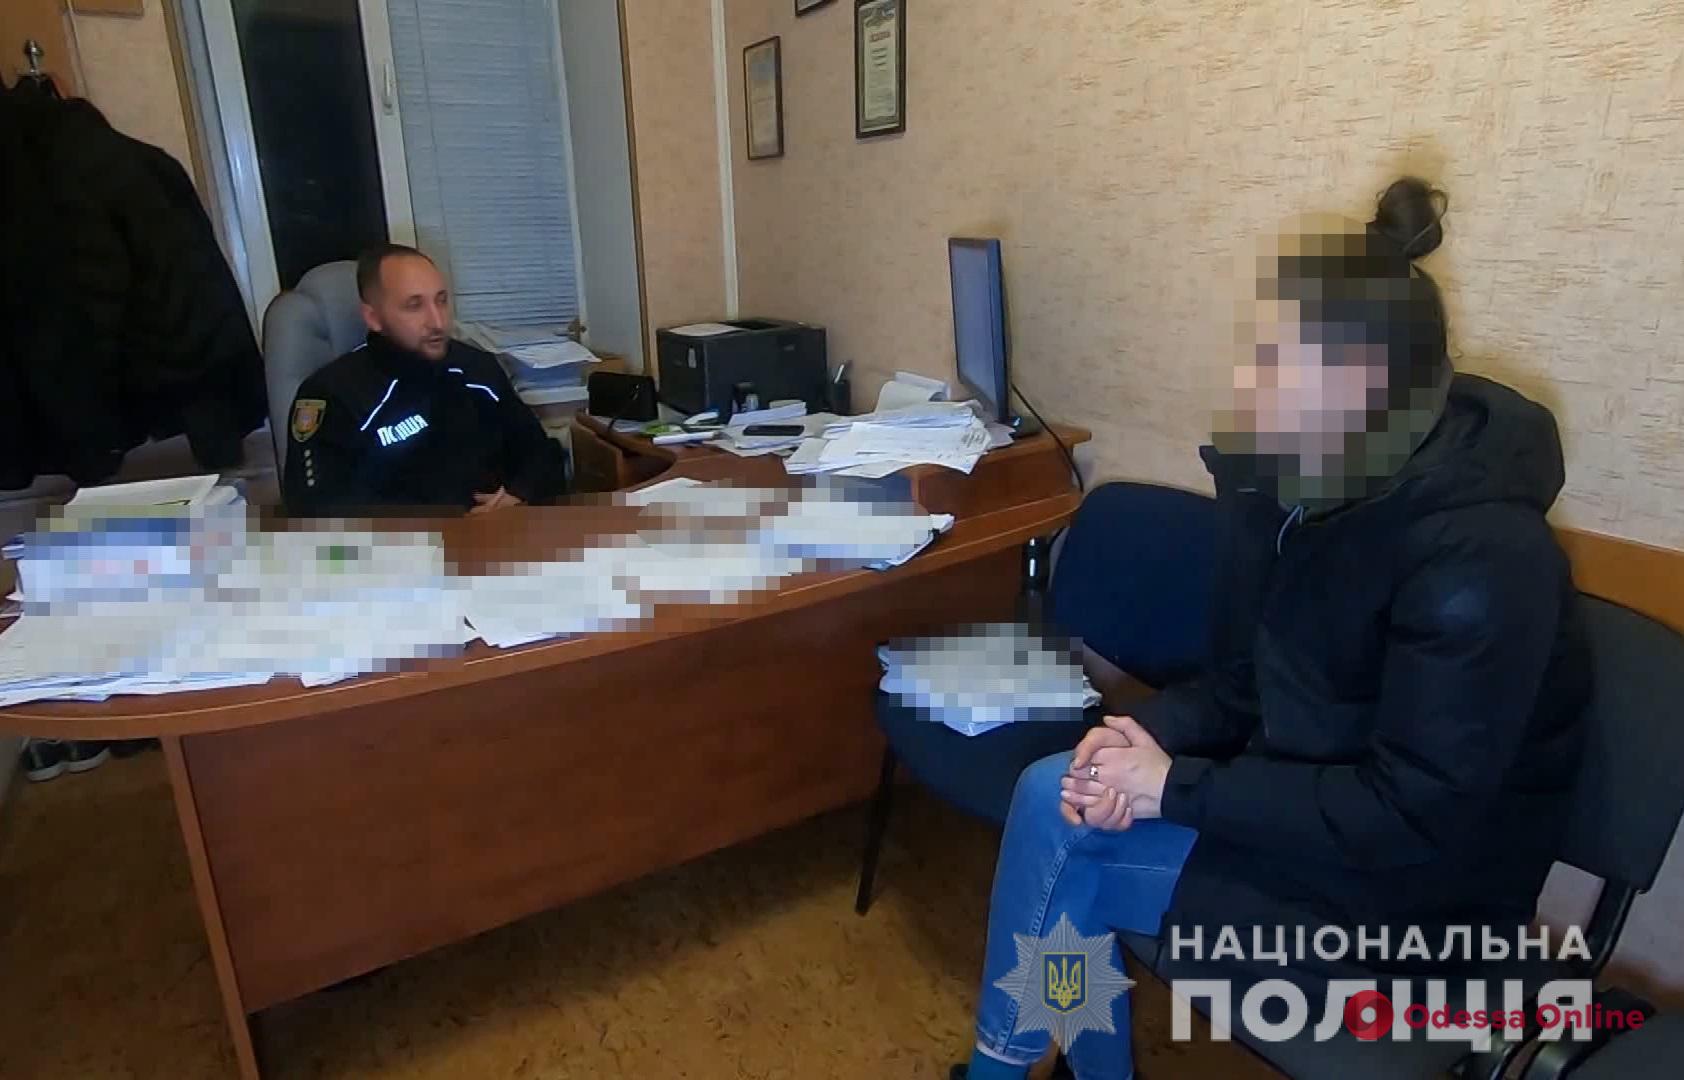 Амфетамин, экстази и пистолет: в Одесе полицейские пресекли семейный наркобизнес